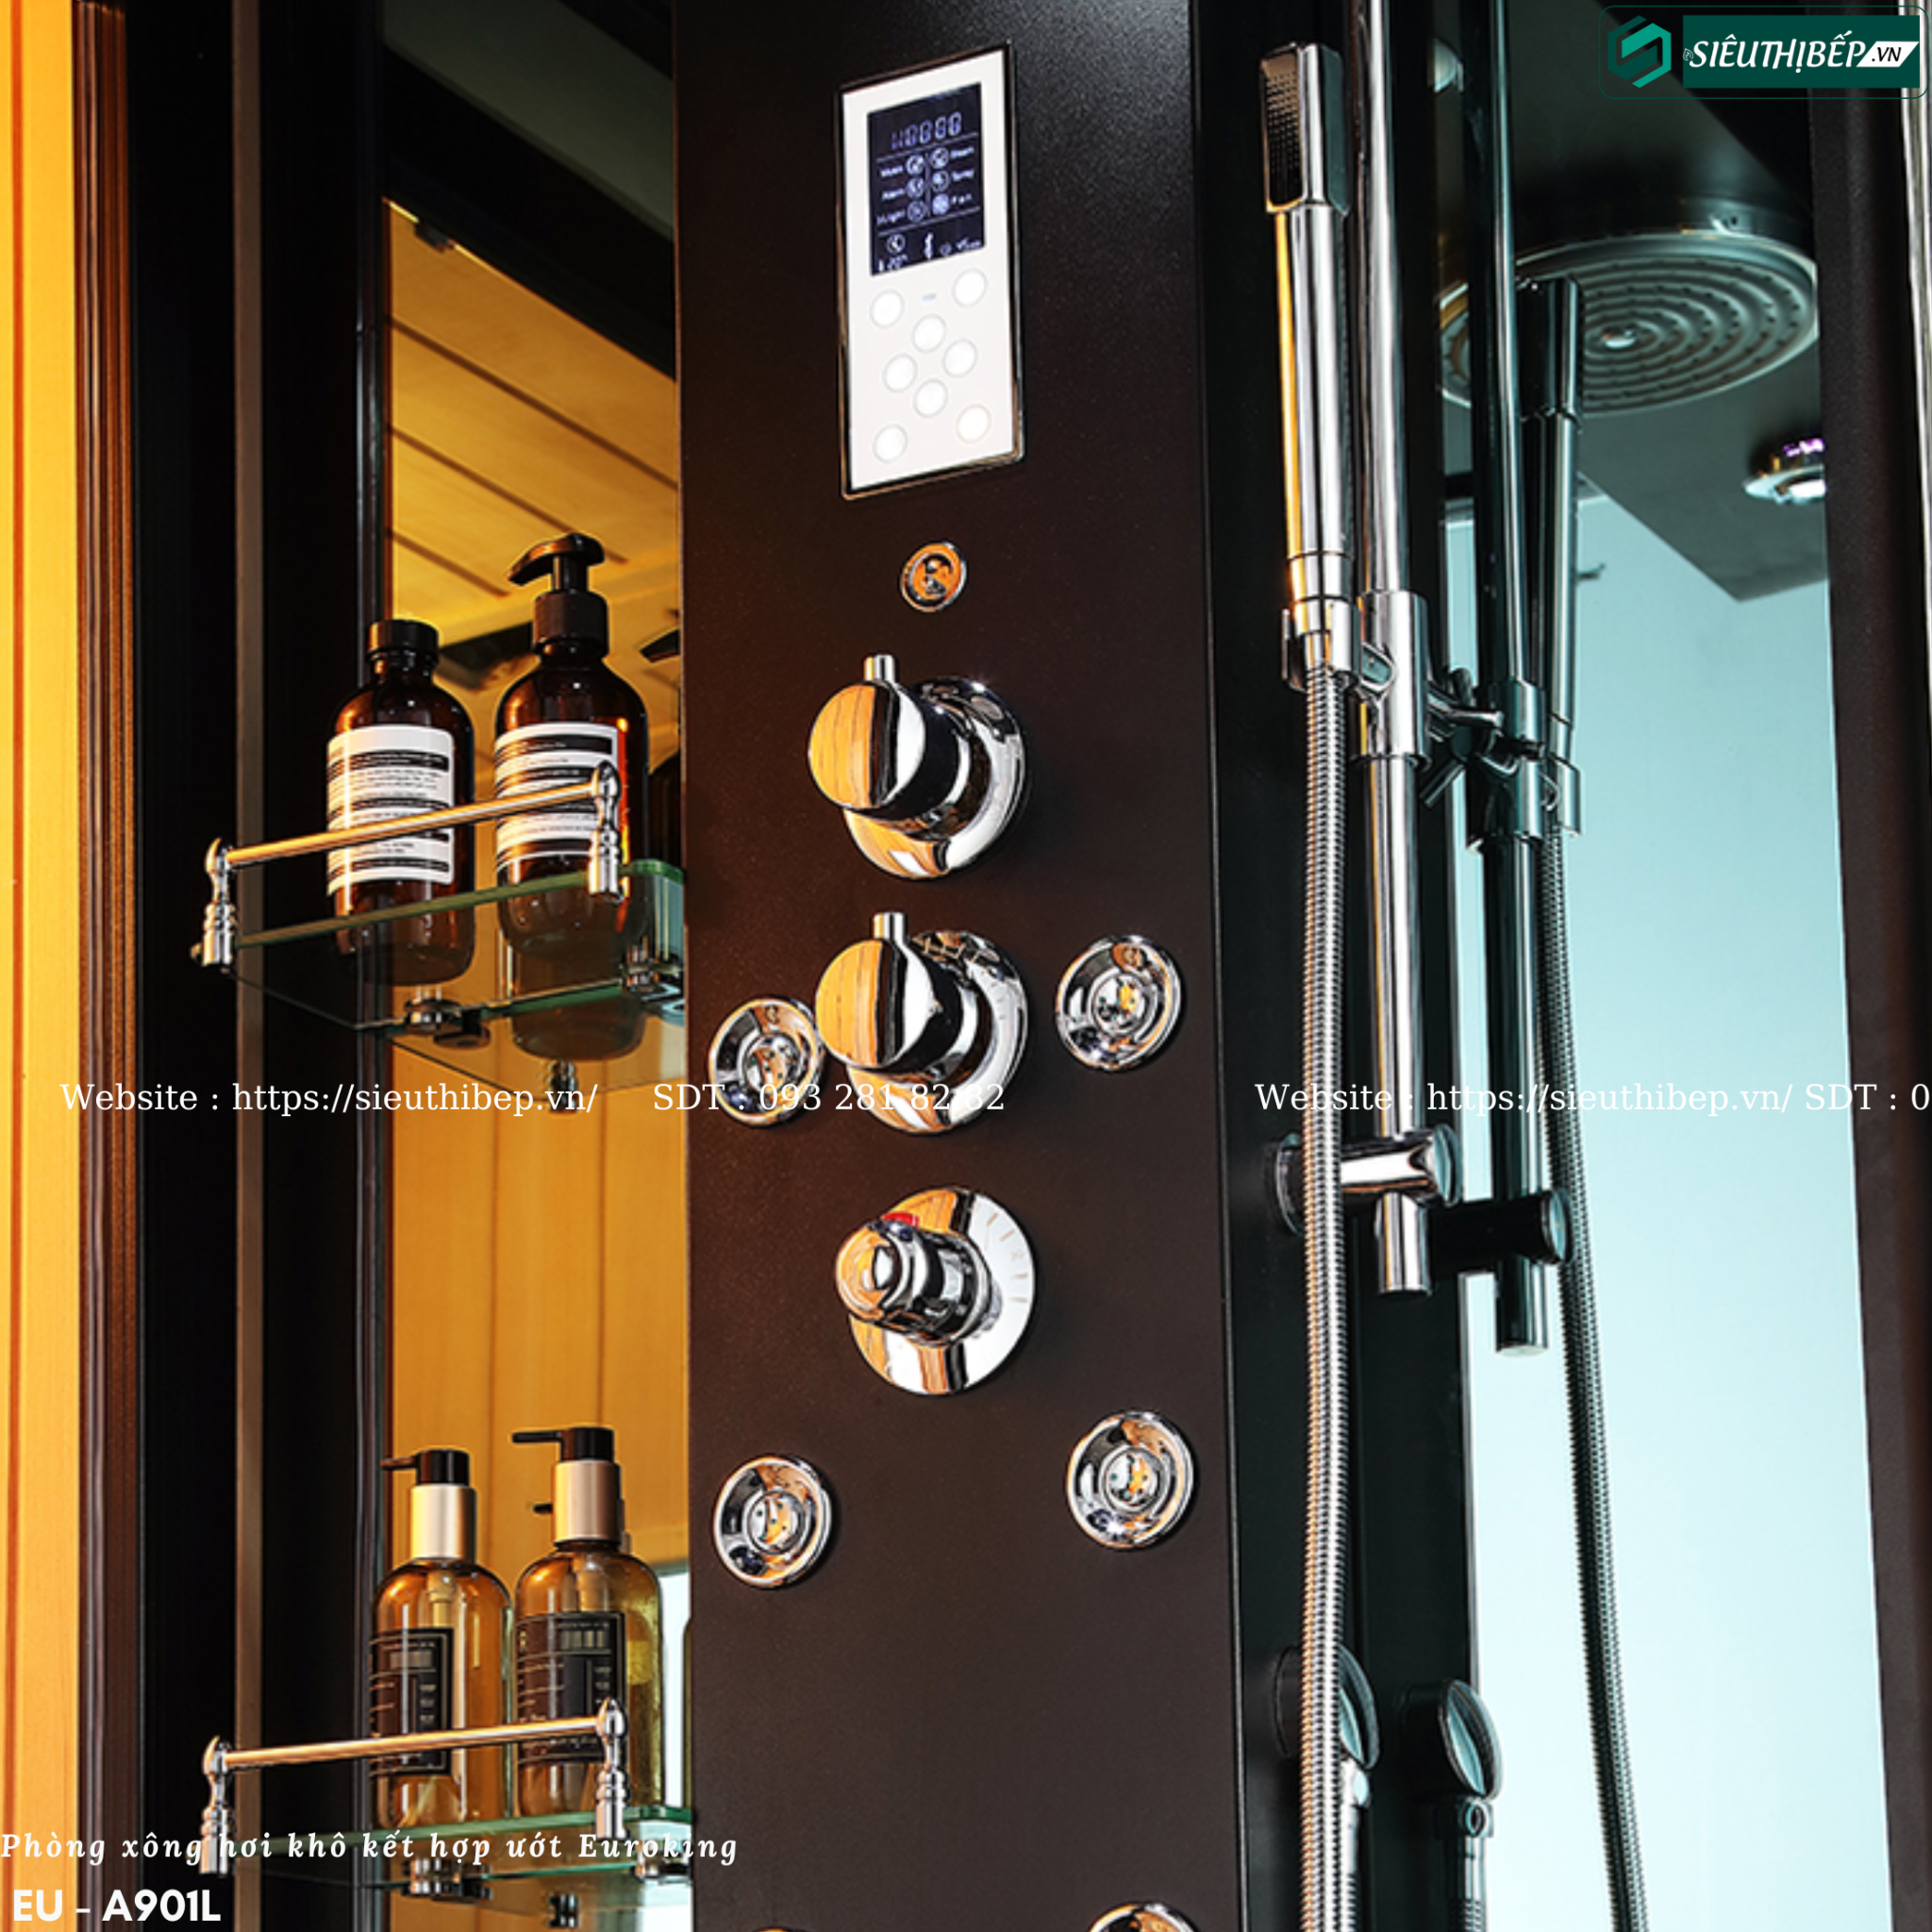 Với công nghệ Châu Âu hiện đại, phòng xông hơi khô kết hợp ướt Euroking EU - A901L sẽ là một trải nghiệm thư giãn hoàn hảo cho bạn. Với độ ẩm và nhiệt độ điều chỉnh được, bạn có thể tiết kiệm thời gian và tận hưởng những lợi ích tuyệt vời của xông hơi.